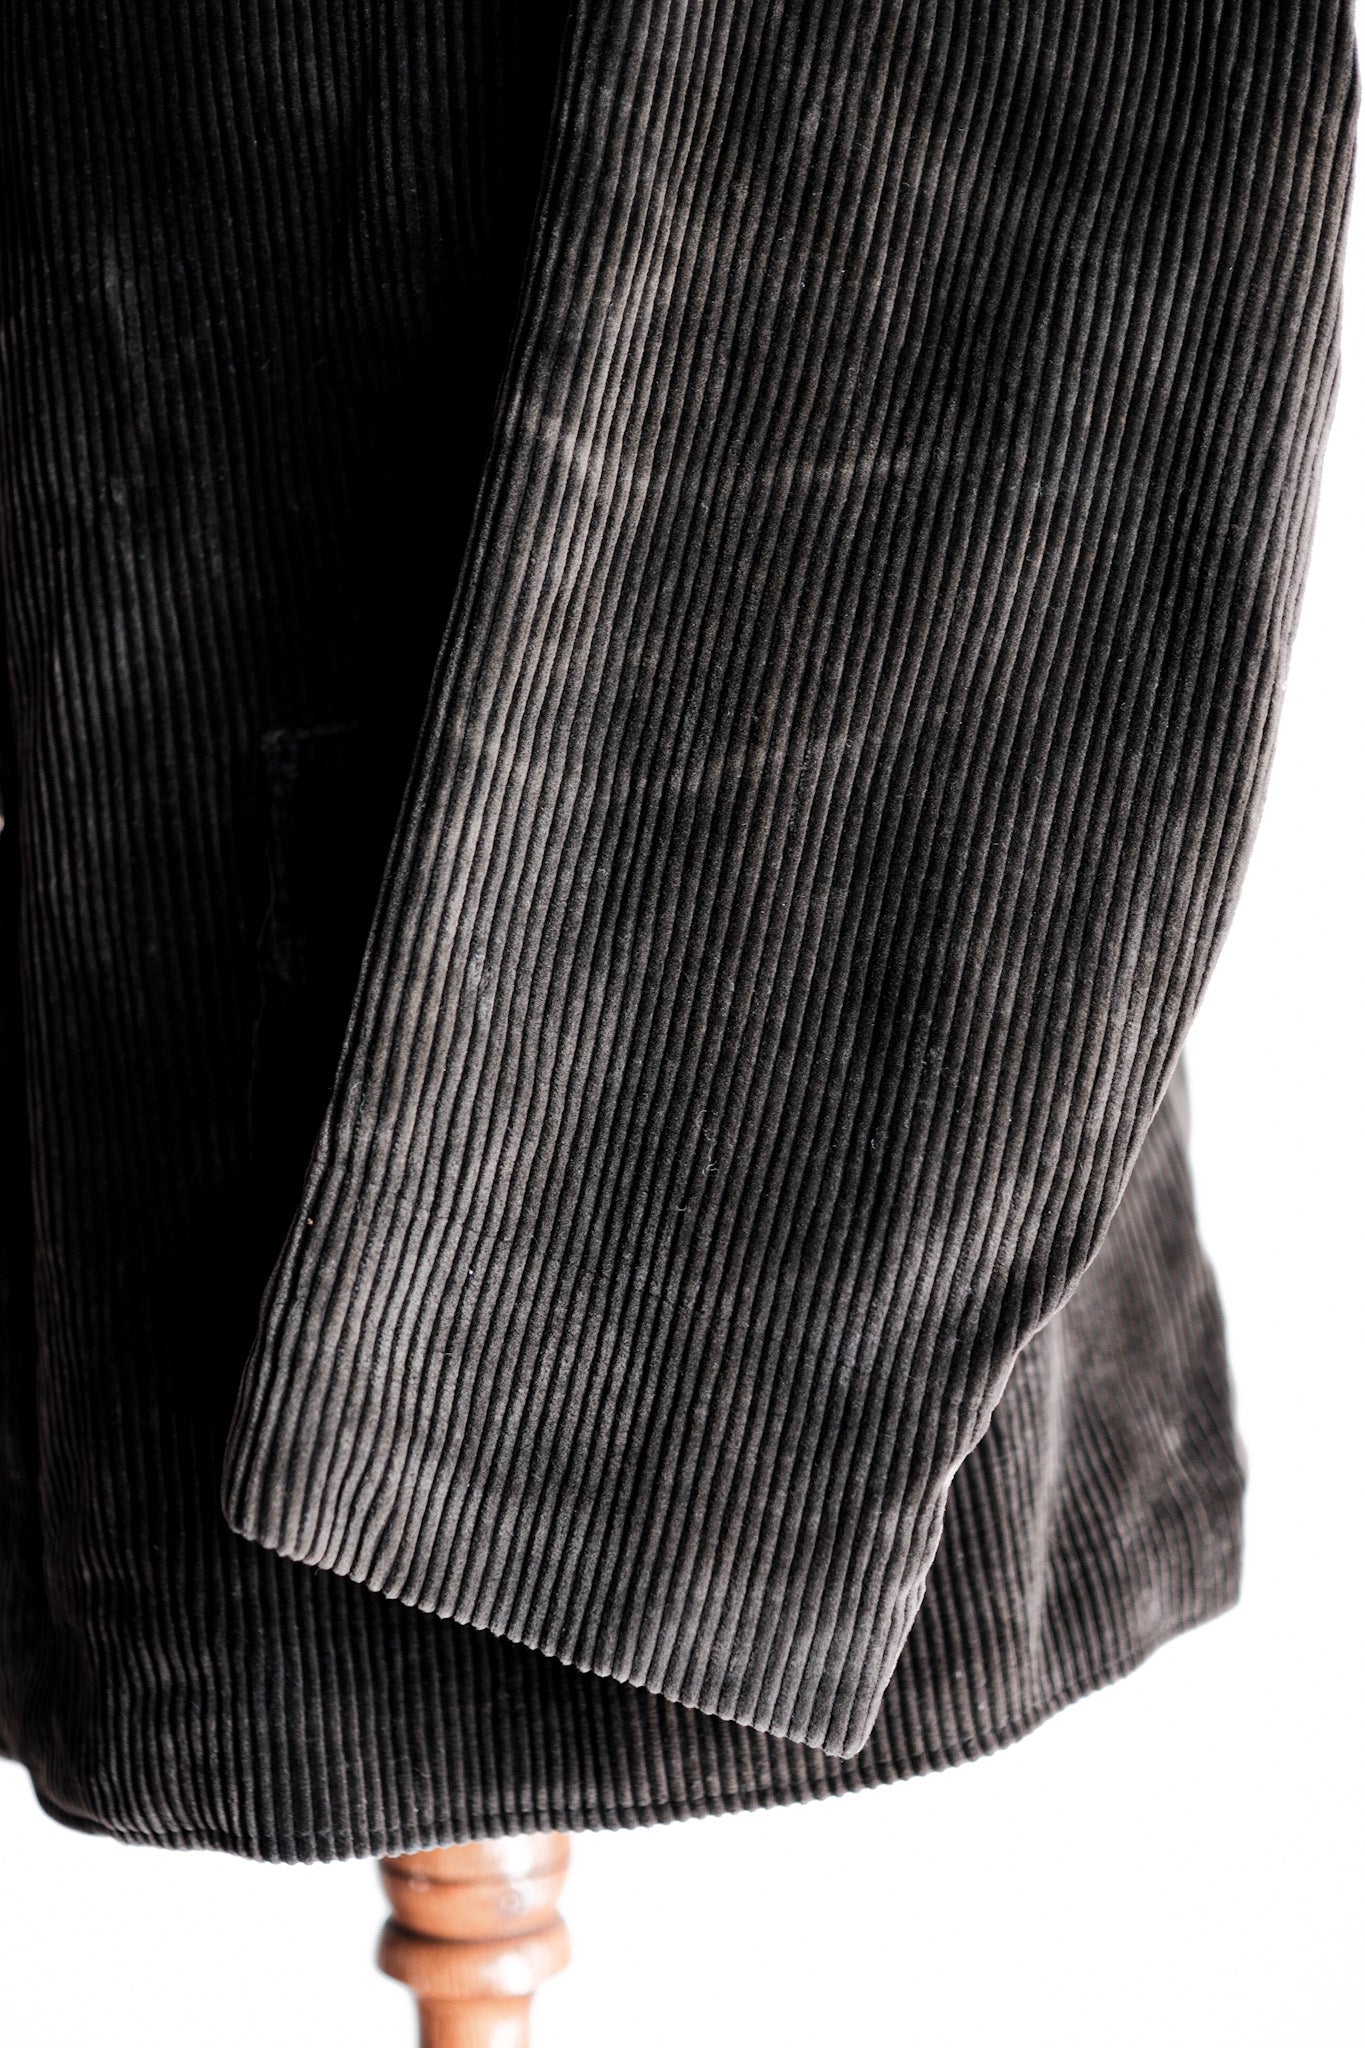 [~ 40 '] 프랑스 빈티지 다크 브라운 코듀로이 게임 키퍼 사냥 재킷